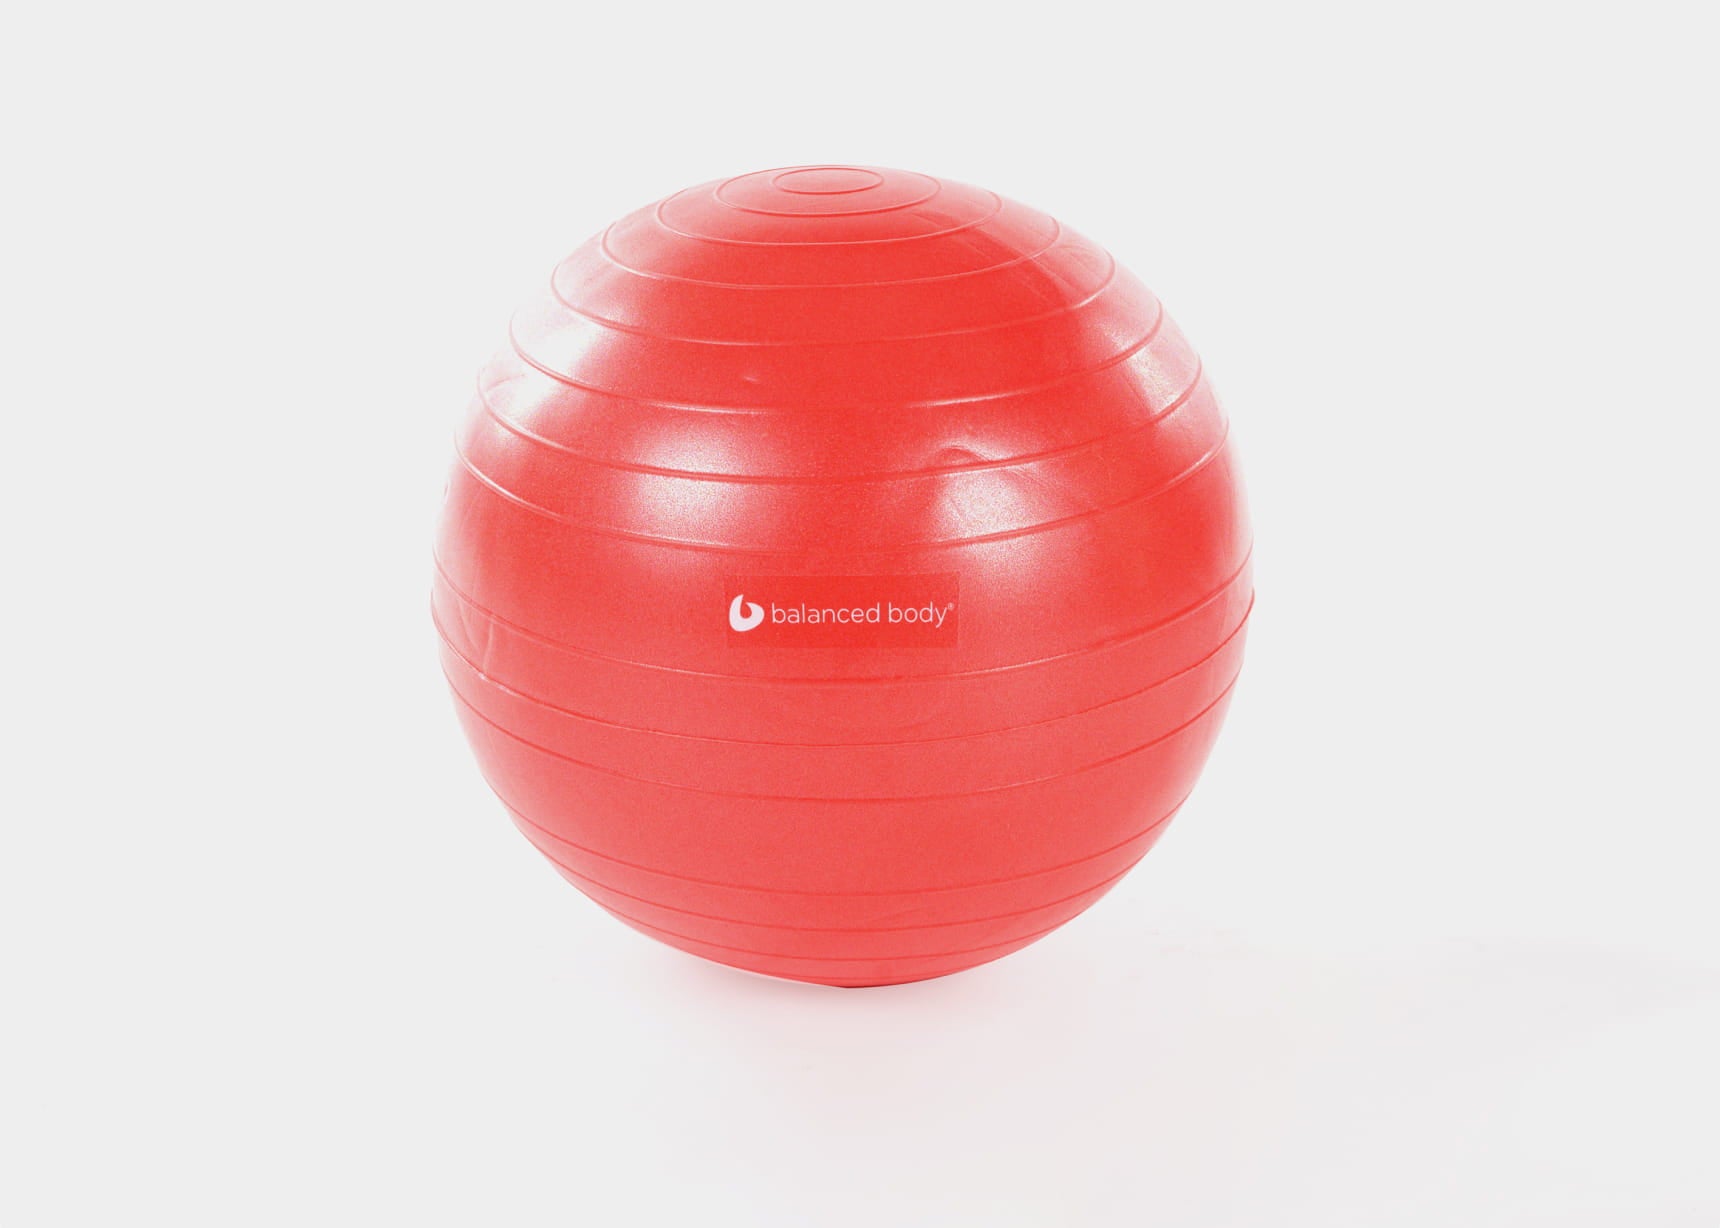 SISSEL® SECUREMAX® Ballon de Gymnastique Ø45 cm 